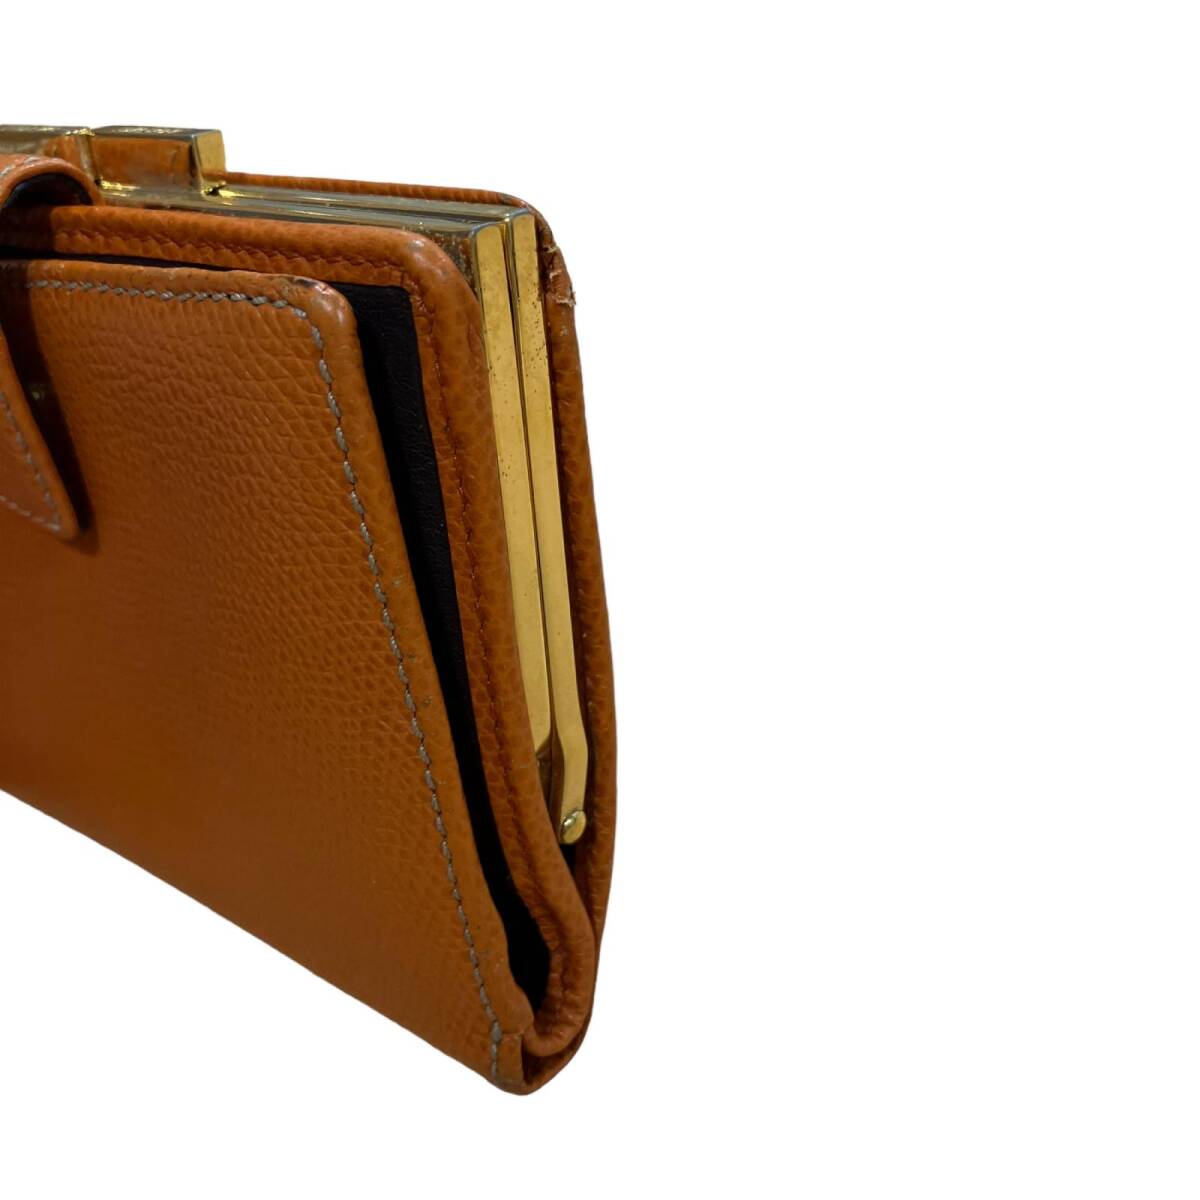 ロエベ アナグラム レザー 2つ折り財布の画像4